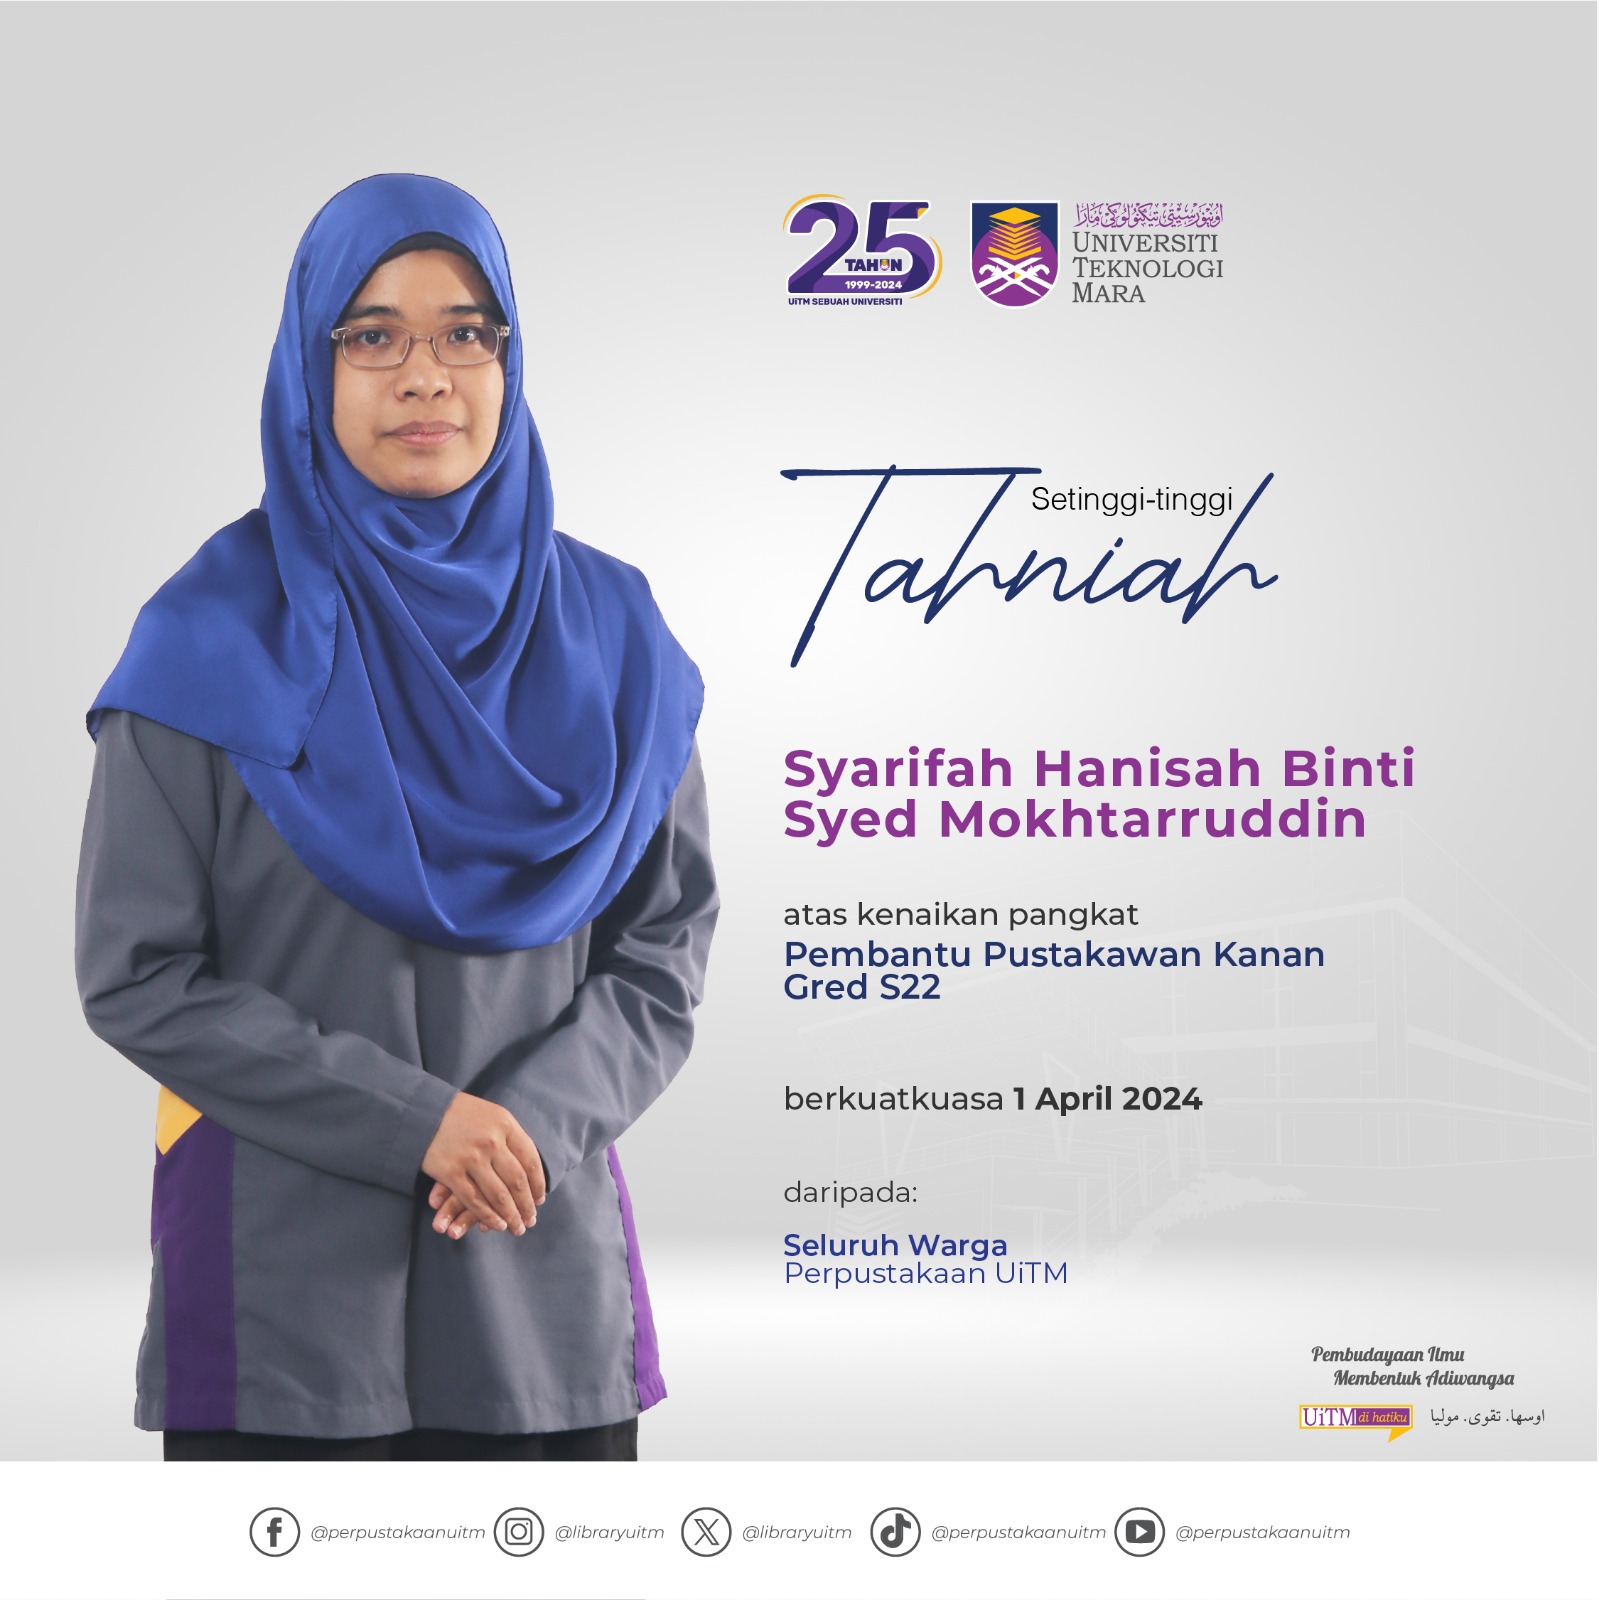 Tahniah Kenaikan Pangkat : Puan Syarifah Hanisah Binti Syed Mokhtarruddin